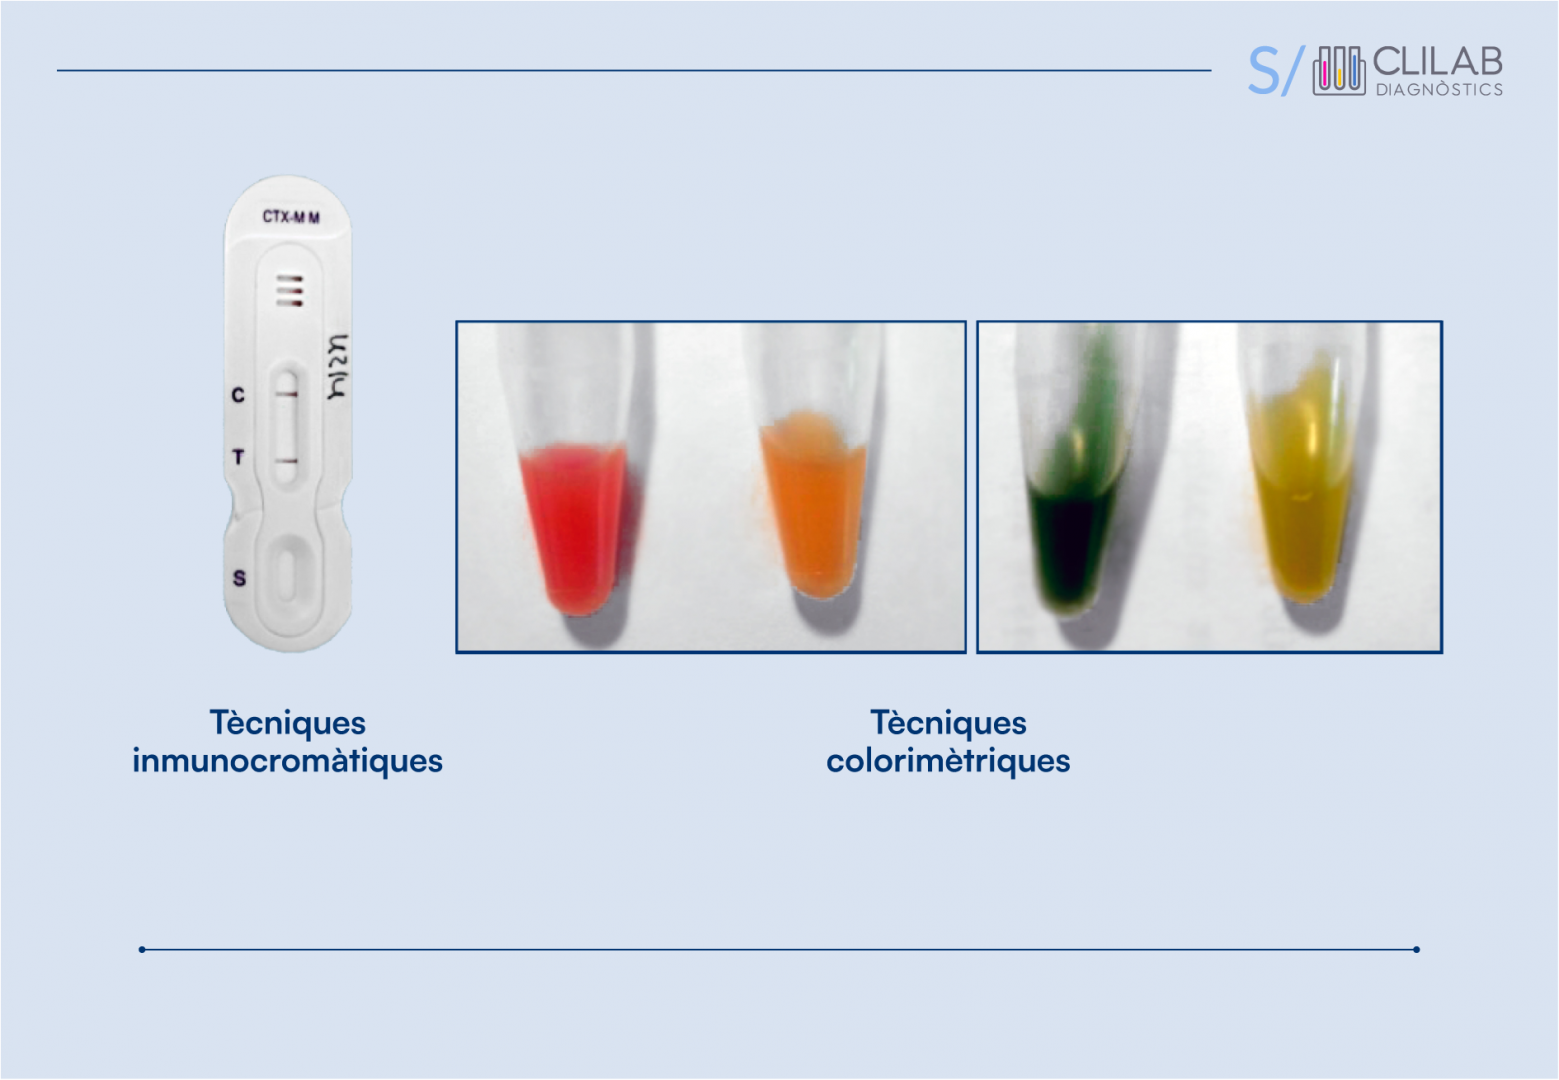 Comparació de tècniques immunocromàtiques i colorimètriques